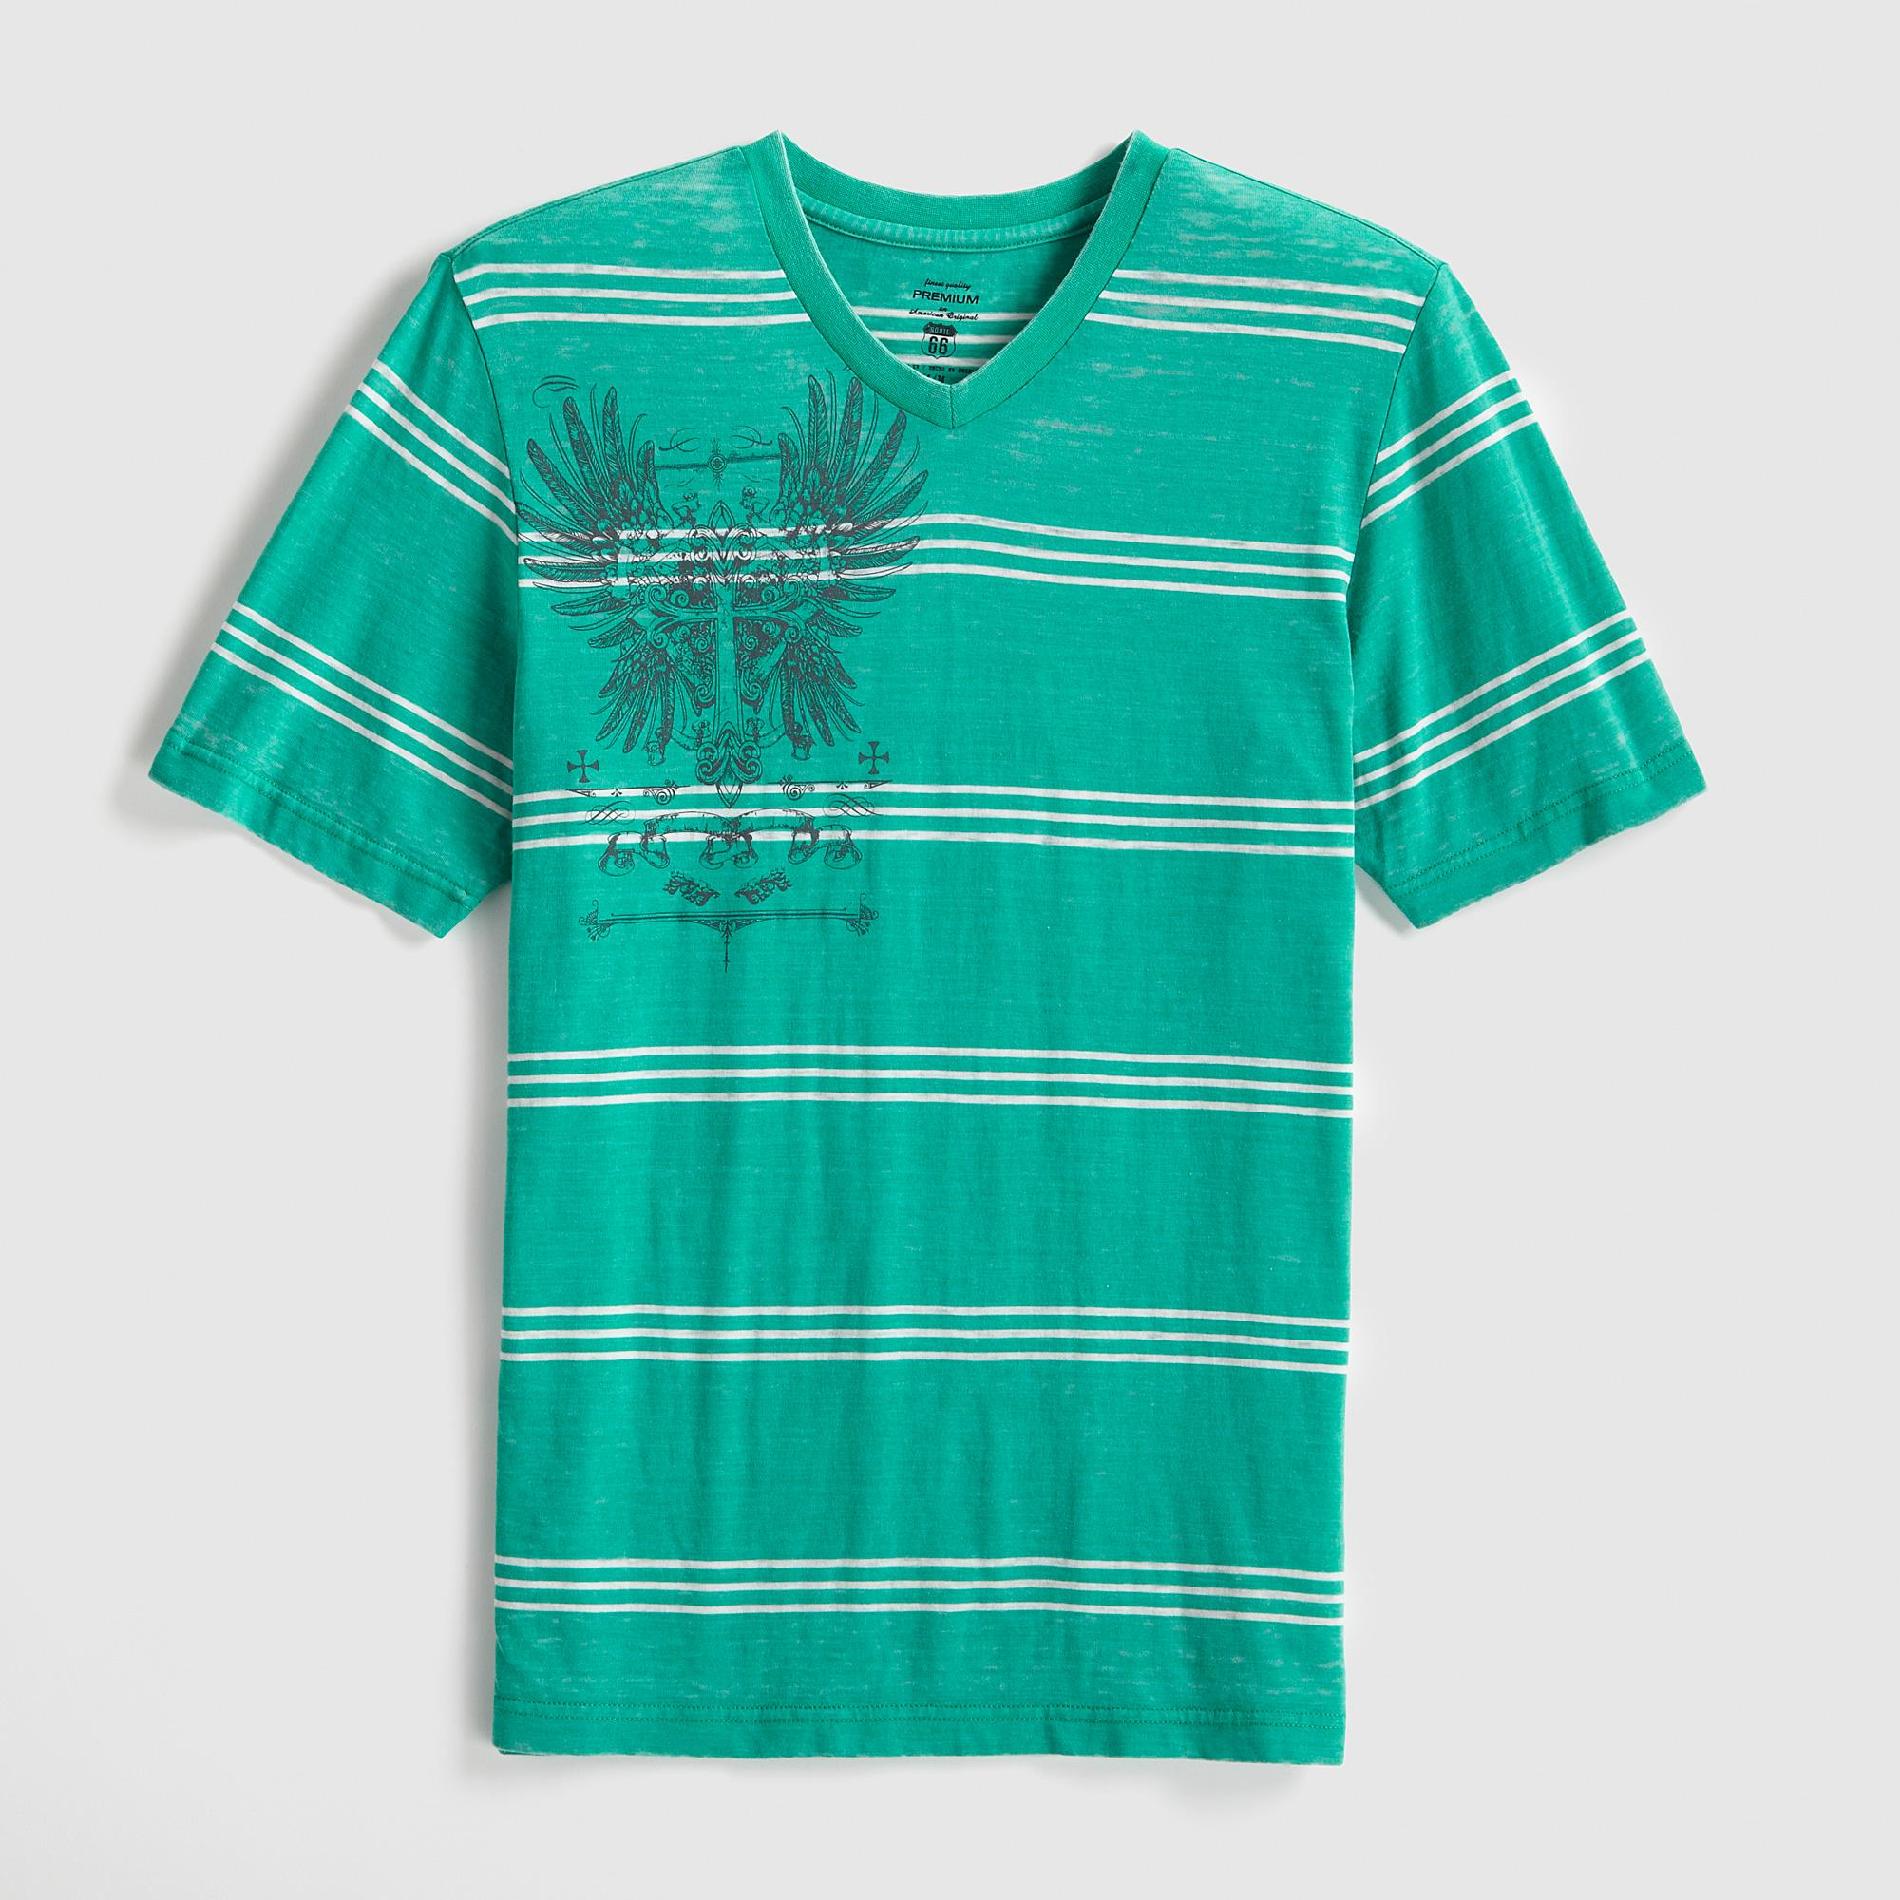 Route 66 Young Men's Burnout T-Shirt - Striped